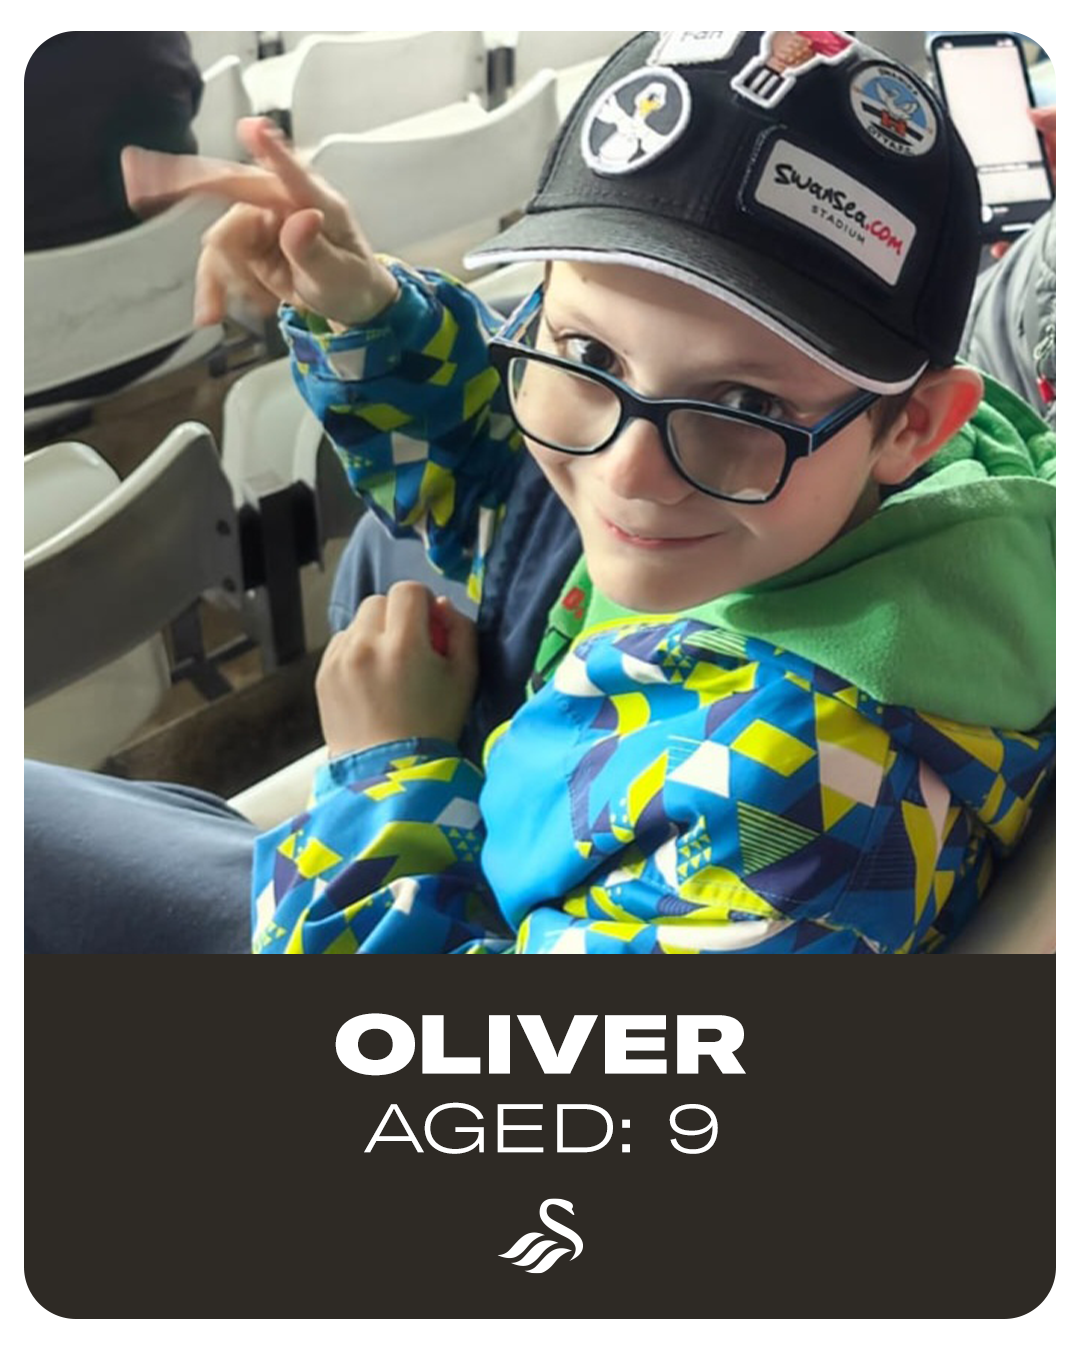 Oliver, Aged 9